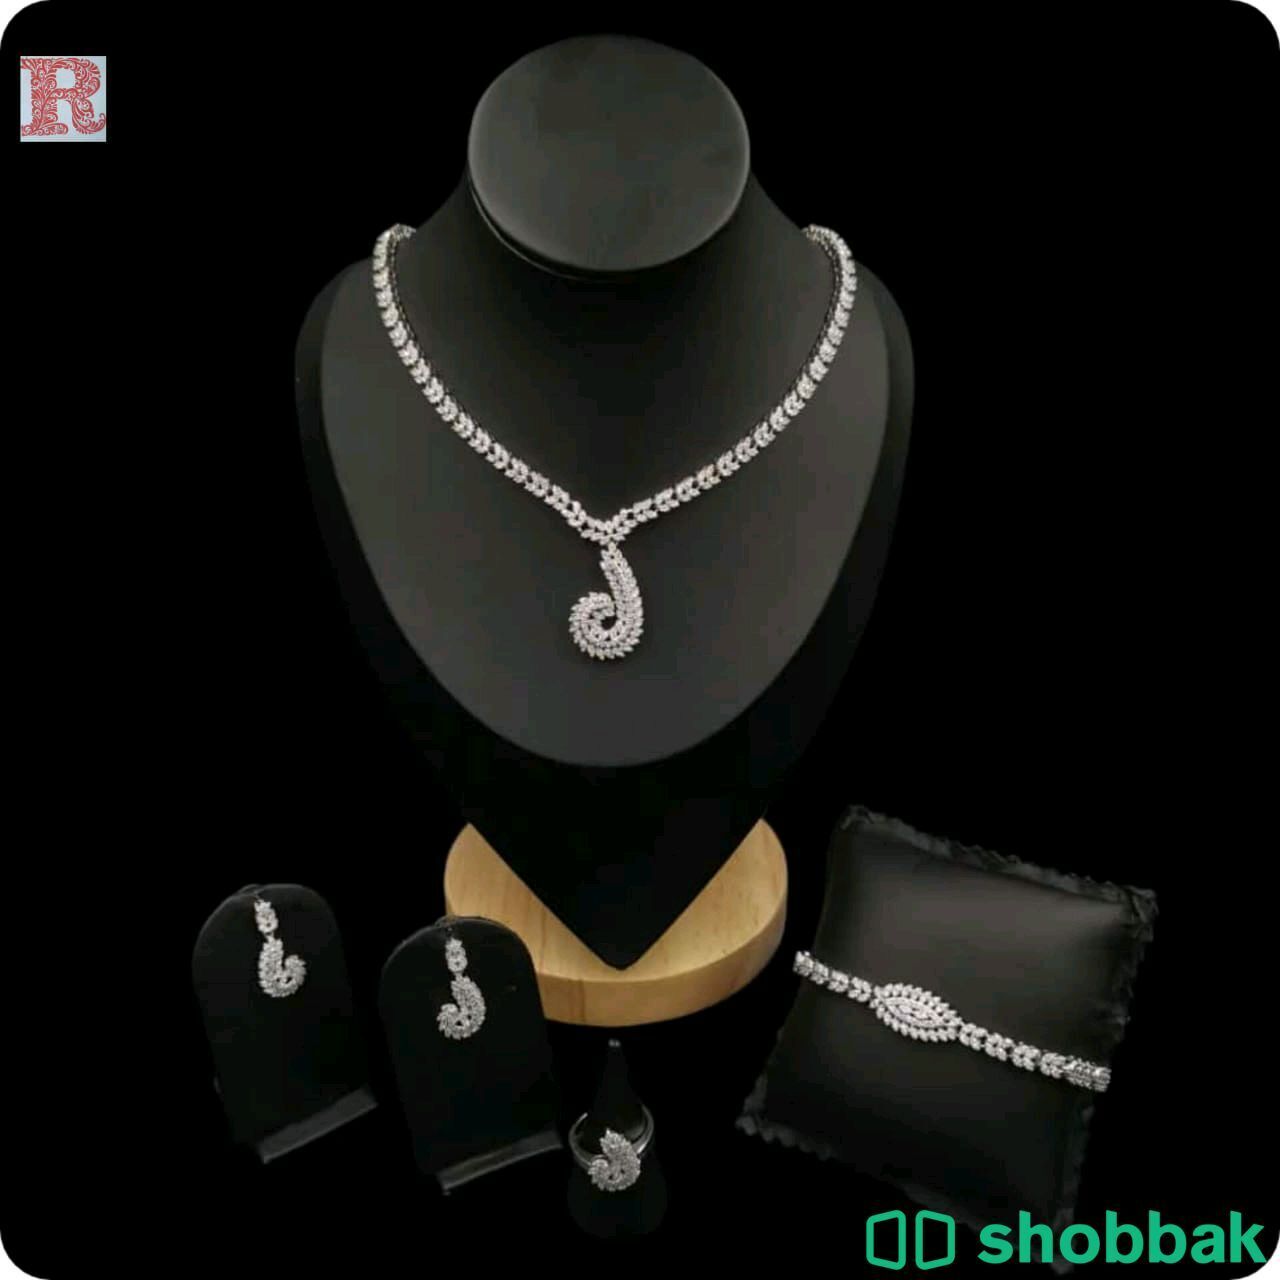 طقم زاركون قص الماس جودة عالية ضمان سنتين Shobbak Saudi Arabia